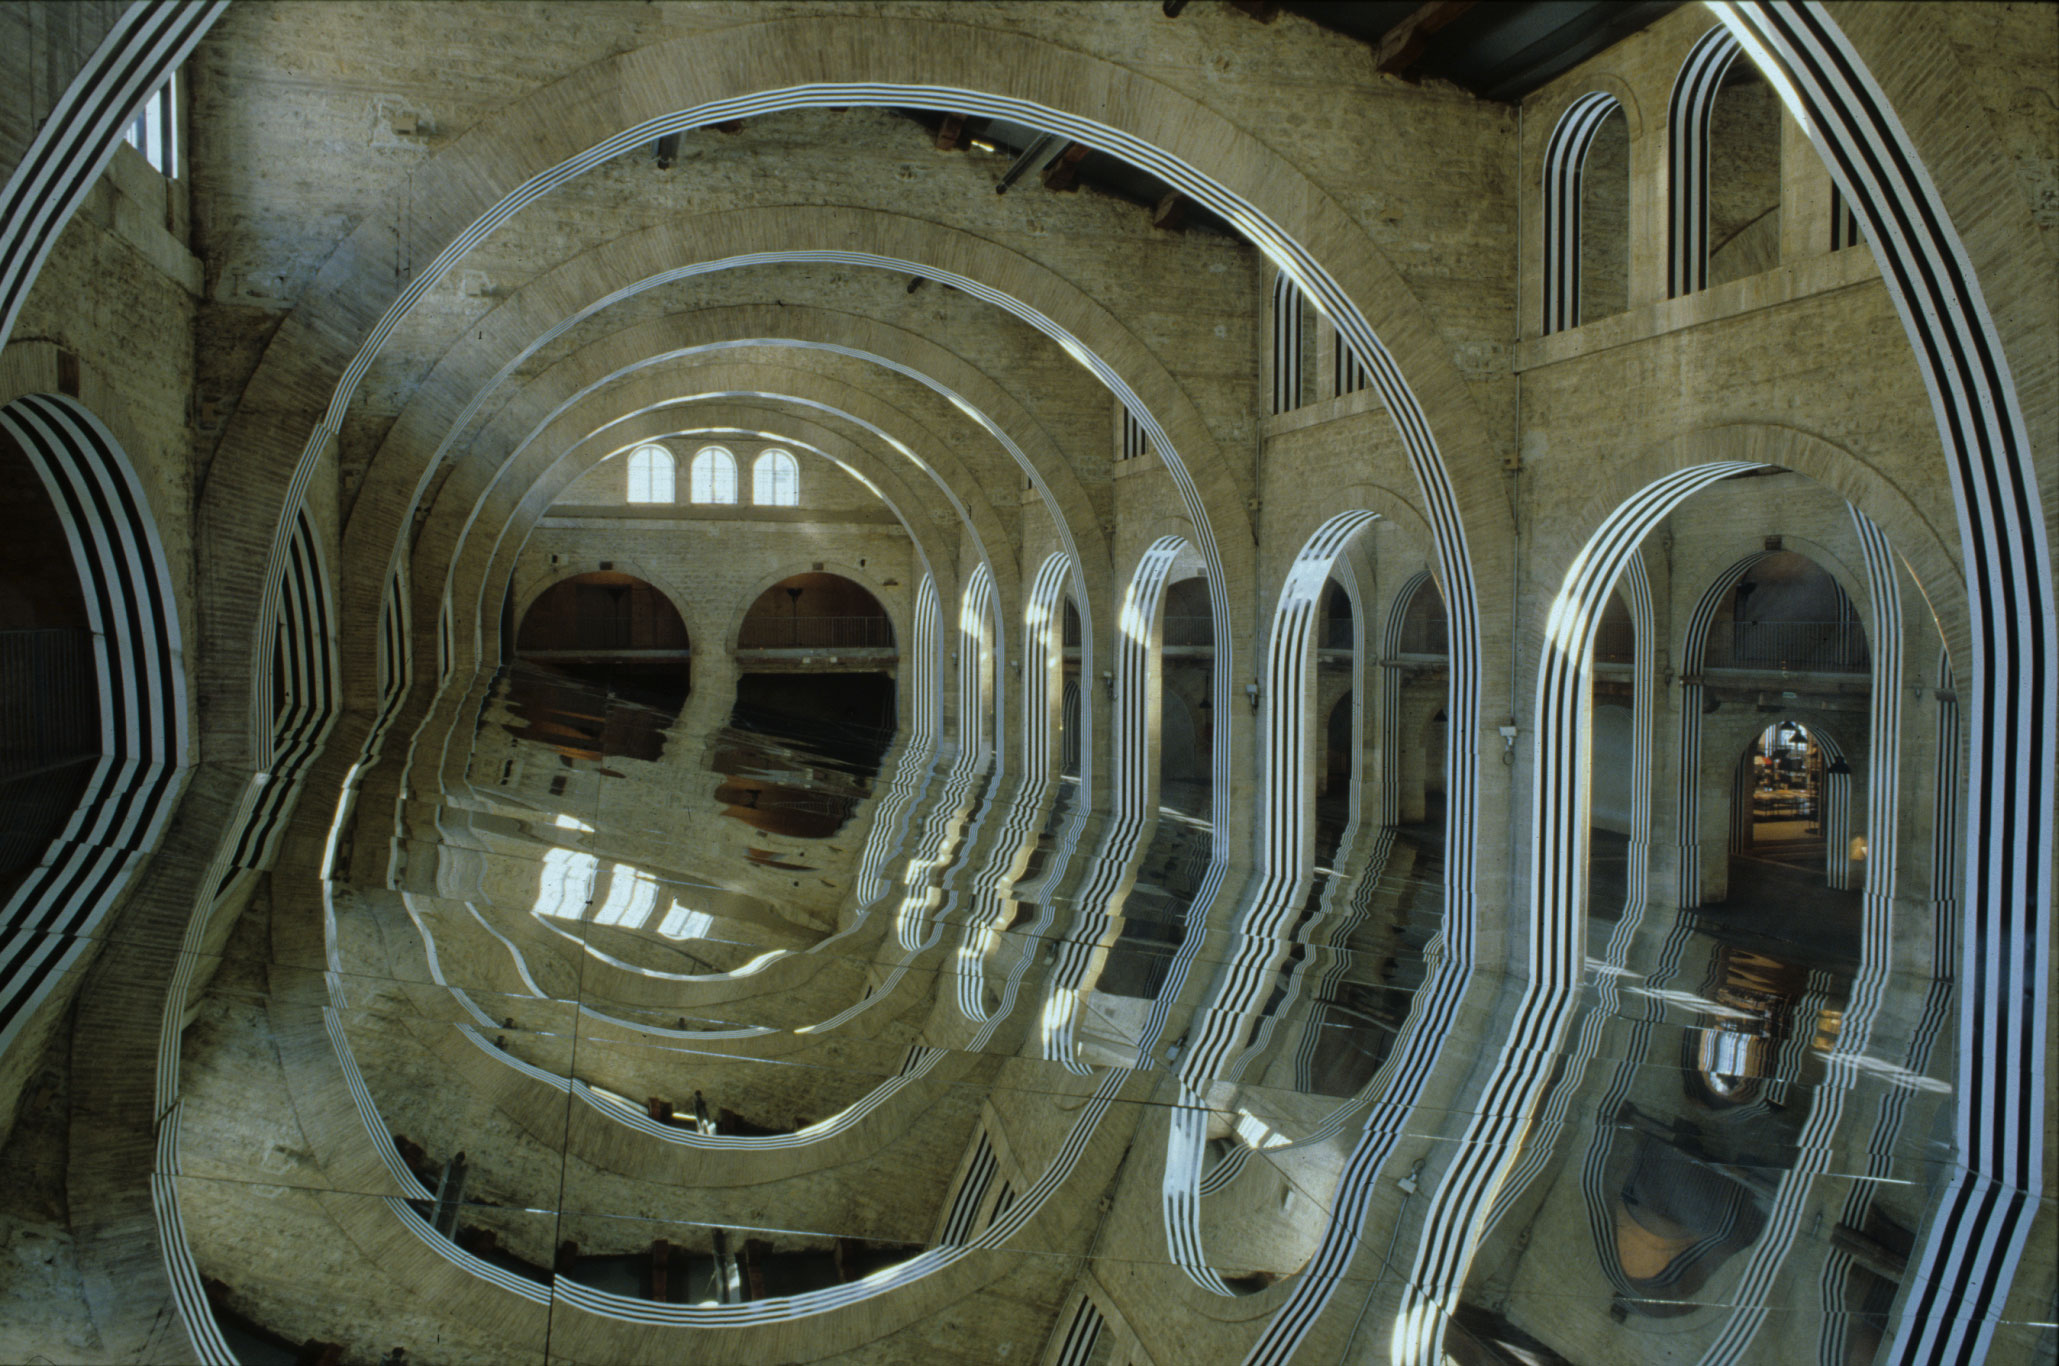 Un immense miroir oblique est installé dans la nef du Capc. Les arches en pierre du bâtiment sont recouvertes de bandes noires et blanches qui se reflètent sur le miroir